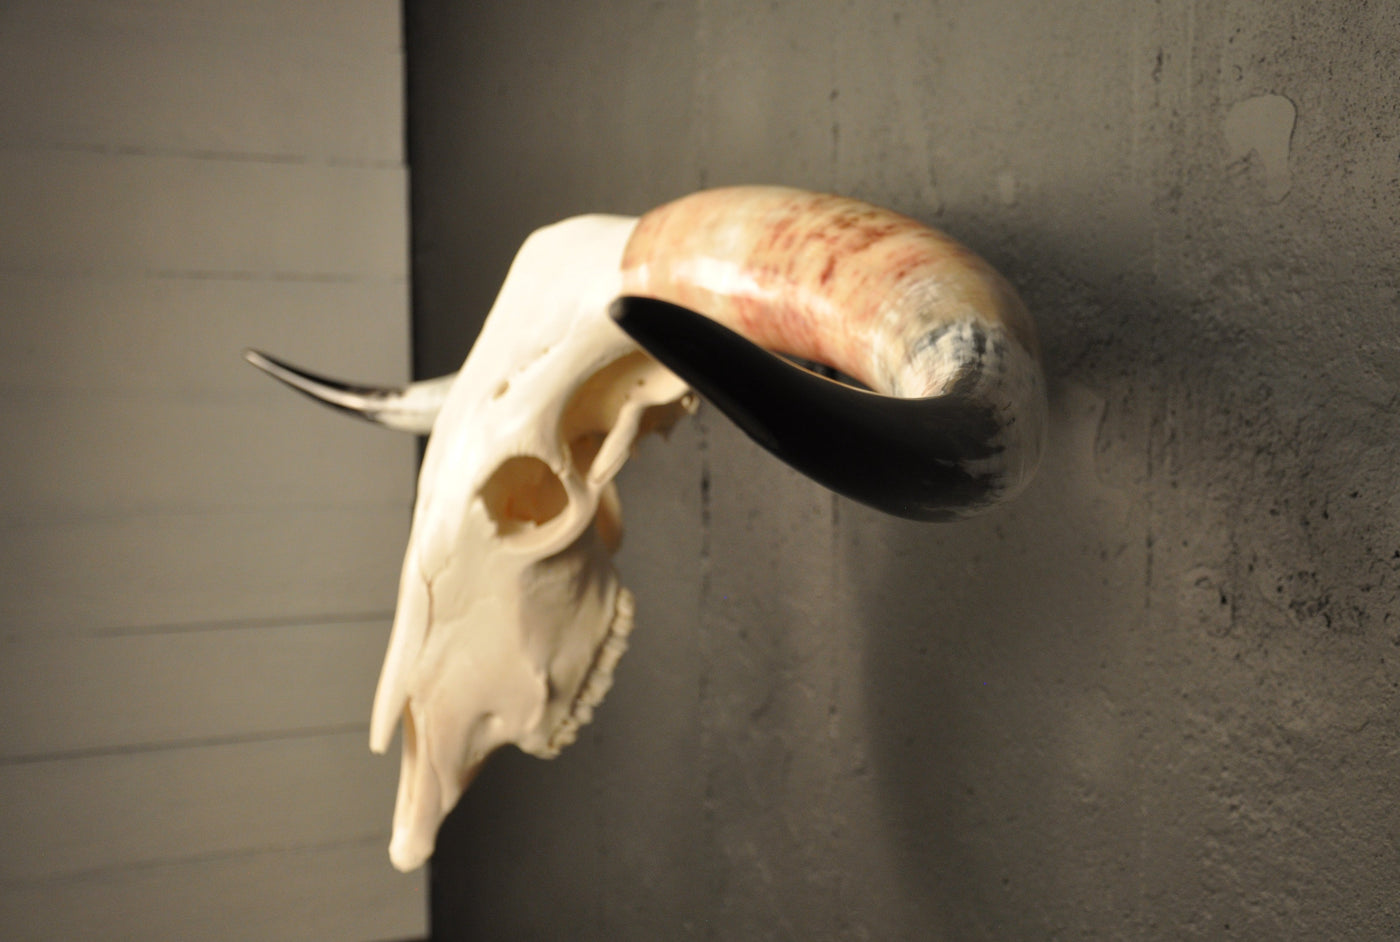 MADELINE - 5' 6" Longhorn Skull